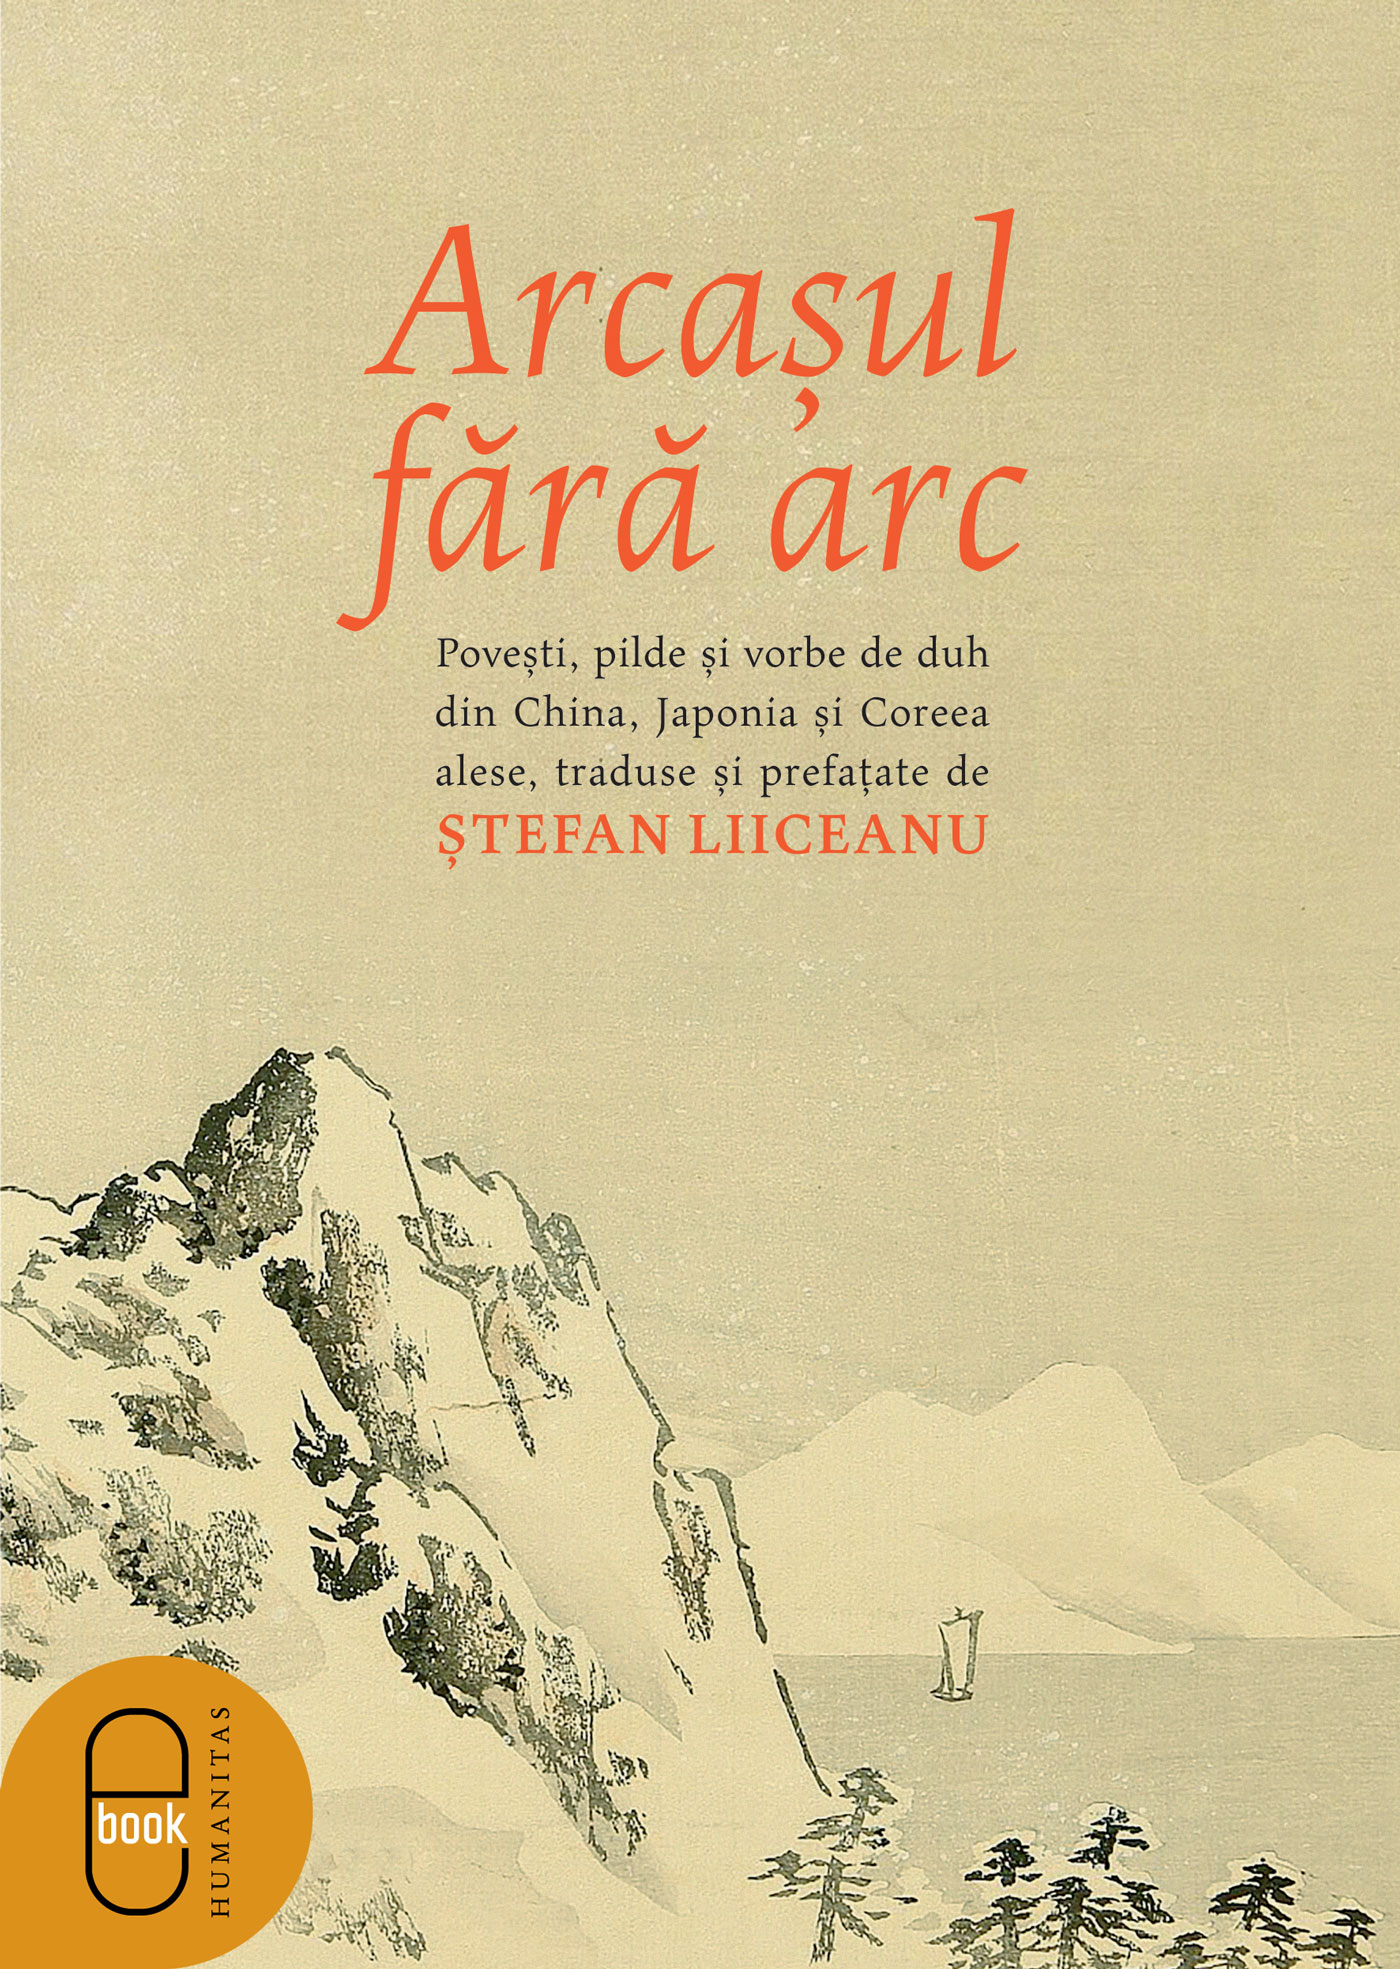 Arcașul fără arc. Poveşti, pilde și vorbe de duh din China, Japonia și Coreea alese, traduse și prefațate de Ștefan Liiceanu (pdf)